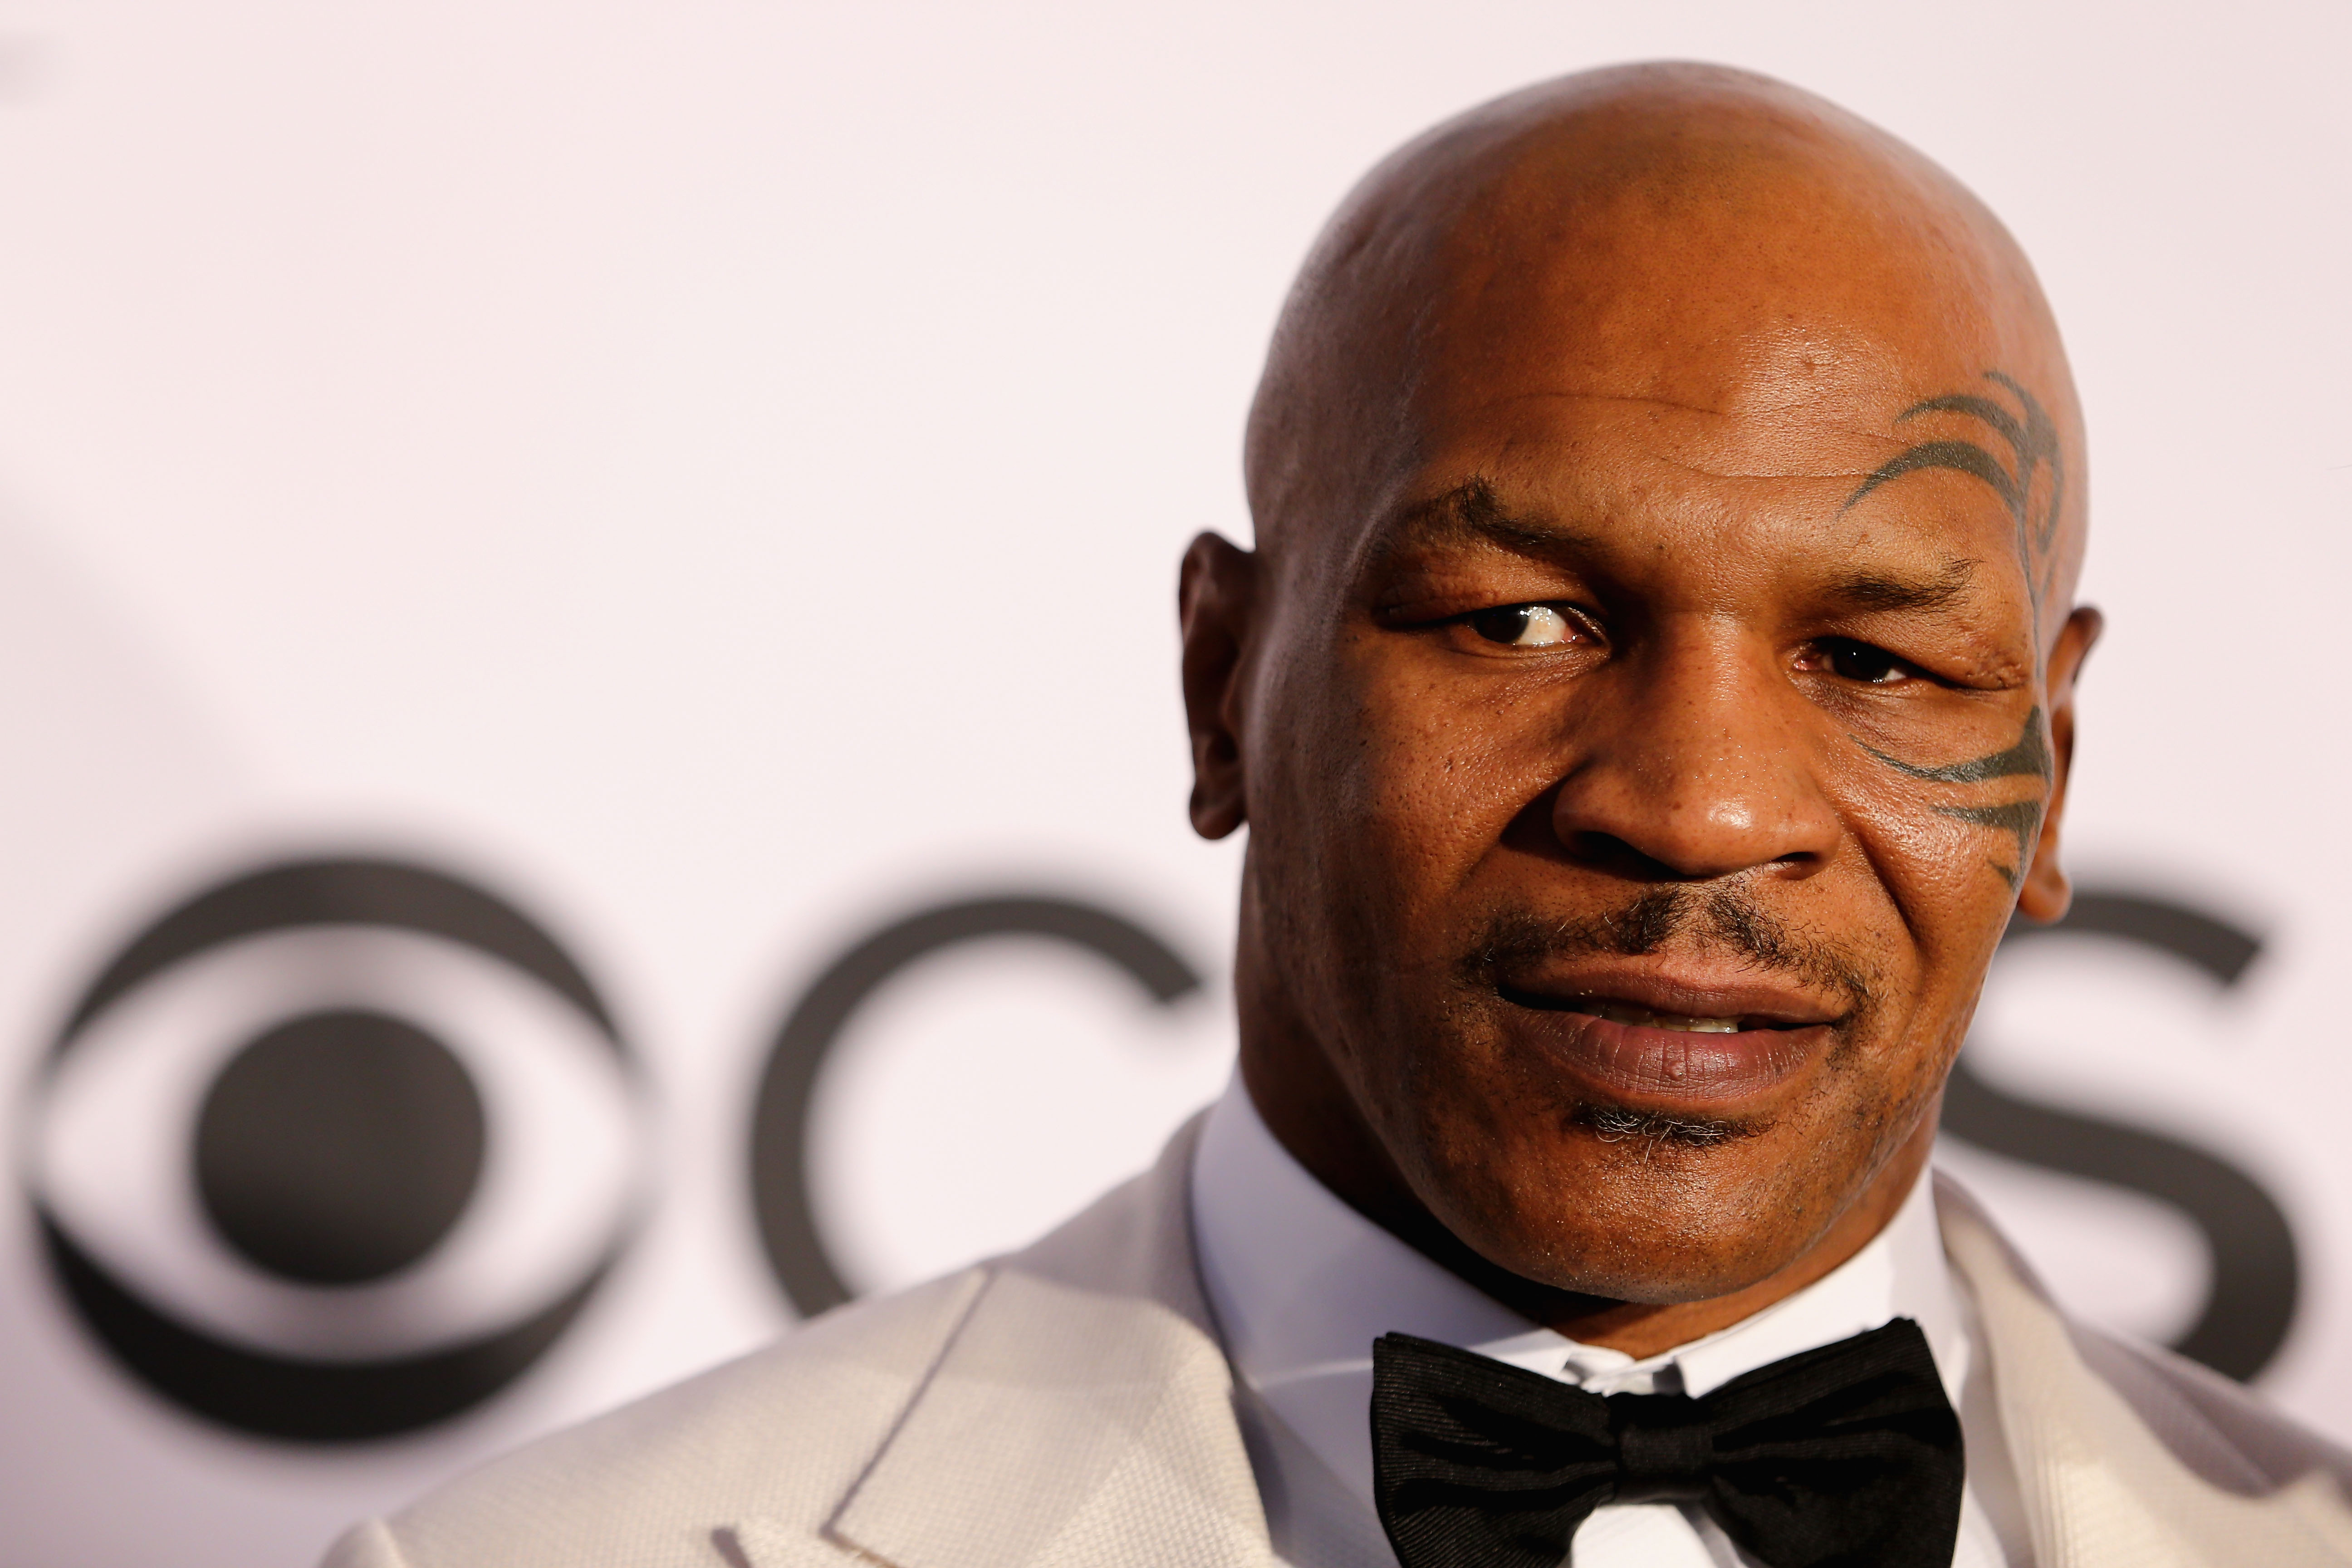 Lutador Mike Tyson Mike Tyson completa 47 anos neste domingo; relembre filmes sobre lutadores  – Vírgula